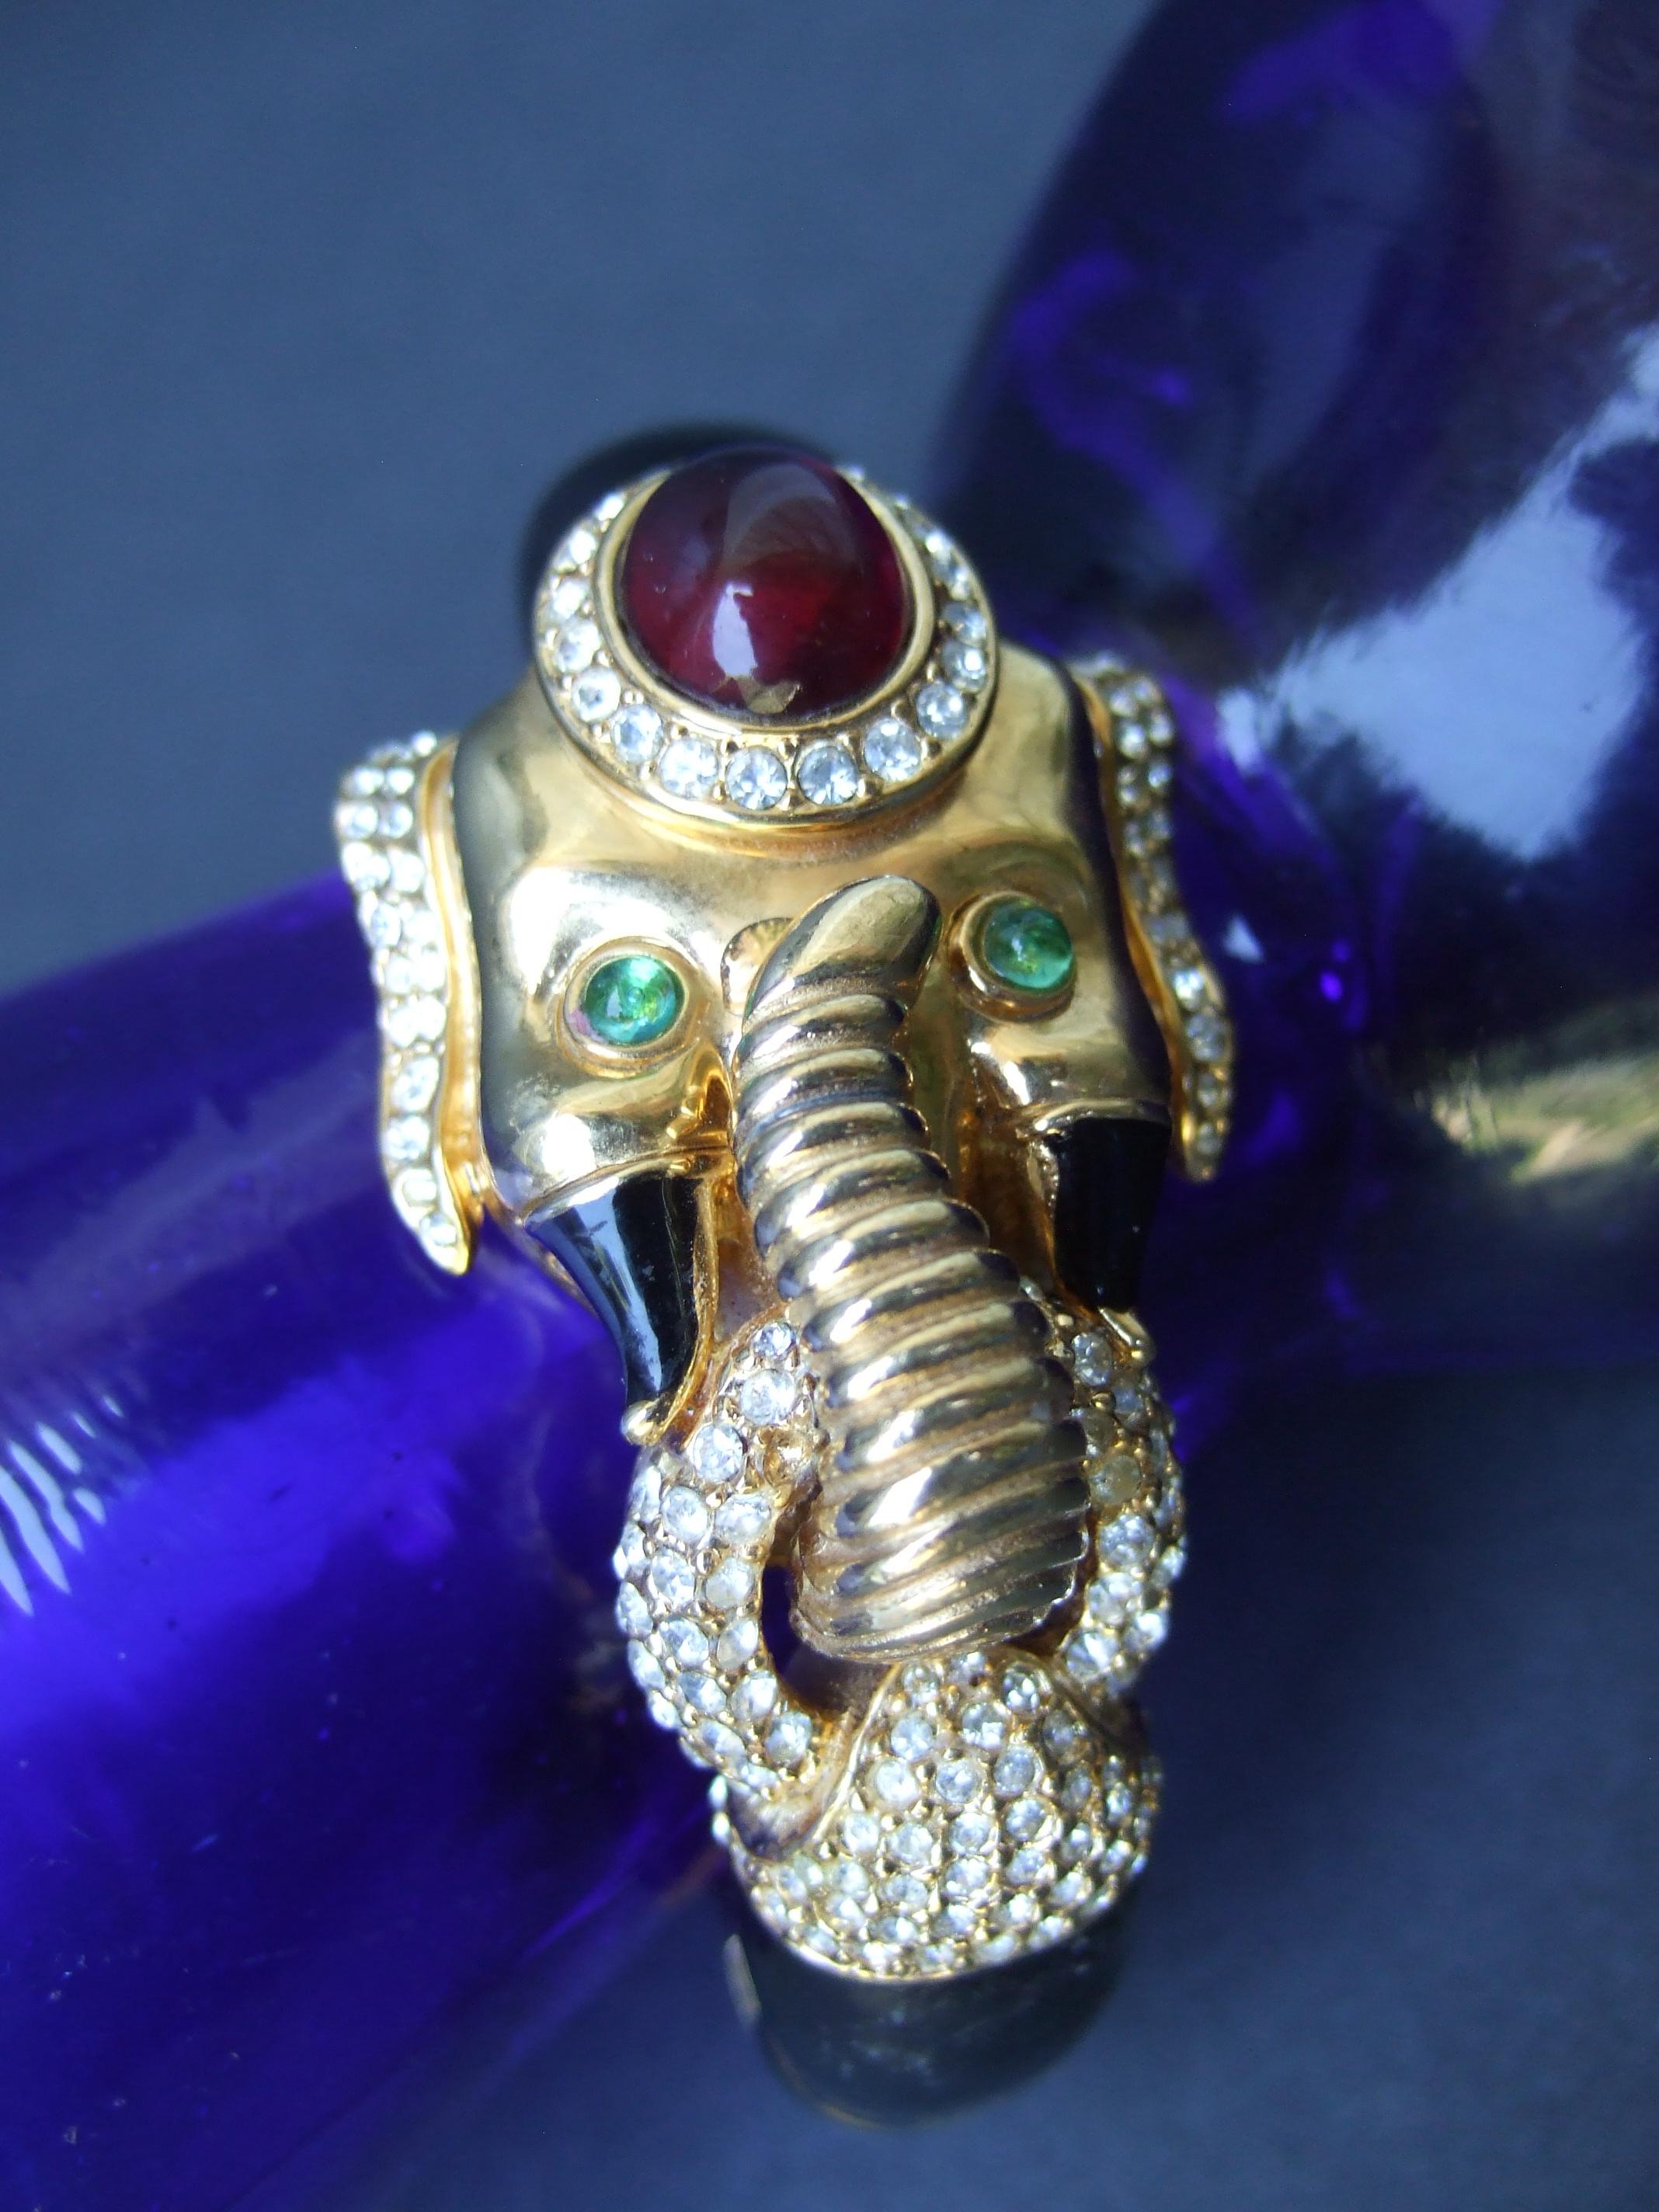 CINER vergoldetes Metall schwarz emailliert Glas Juwelen aufklappbaren Elefanten Armband c 1970s
Das opulente Armband ist mit einem exotischen Elefanten gestaltet, der mit einem rubinroten Stein verziert ist
glas-Cabochon oben auf dem Kopf